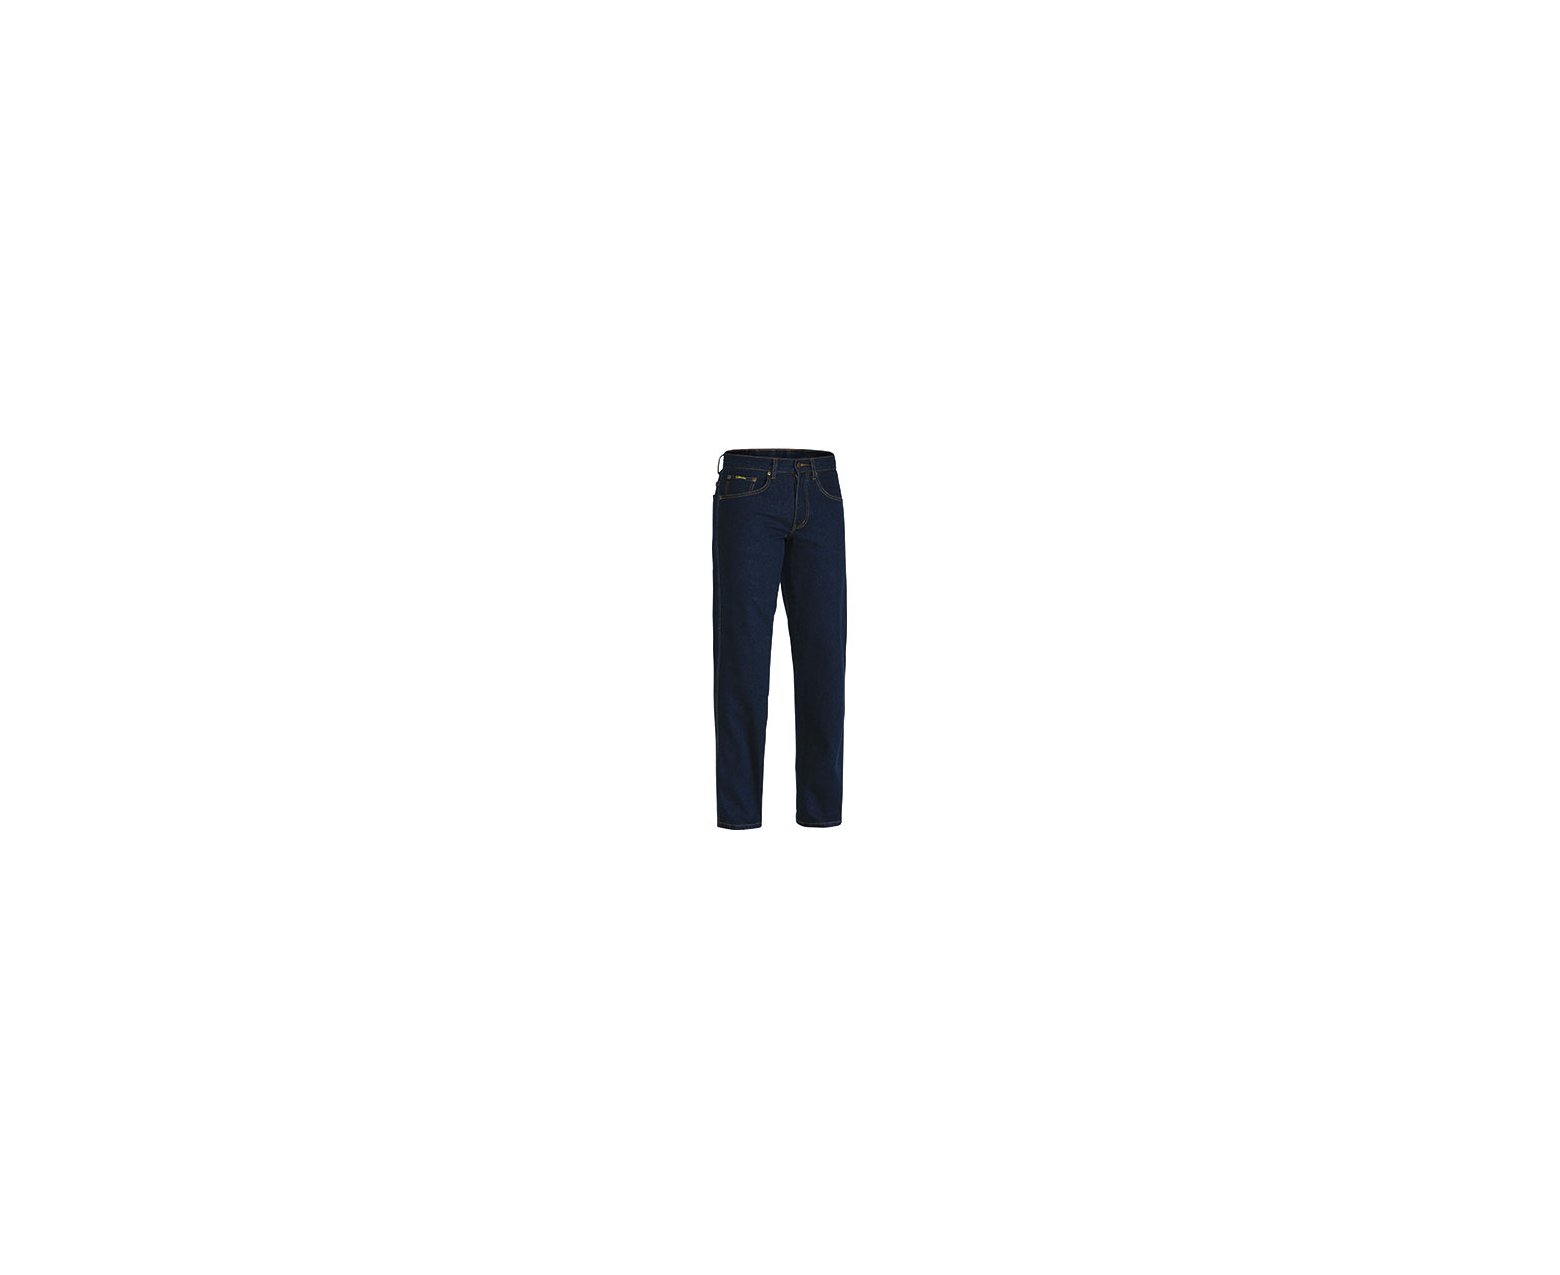 Rough Rider Denim Stretch Jeans - Bisley Workwear